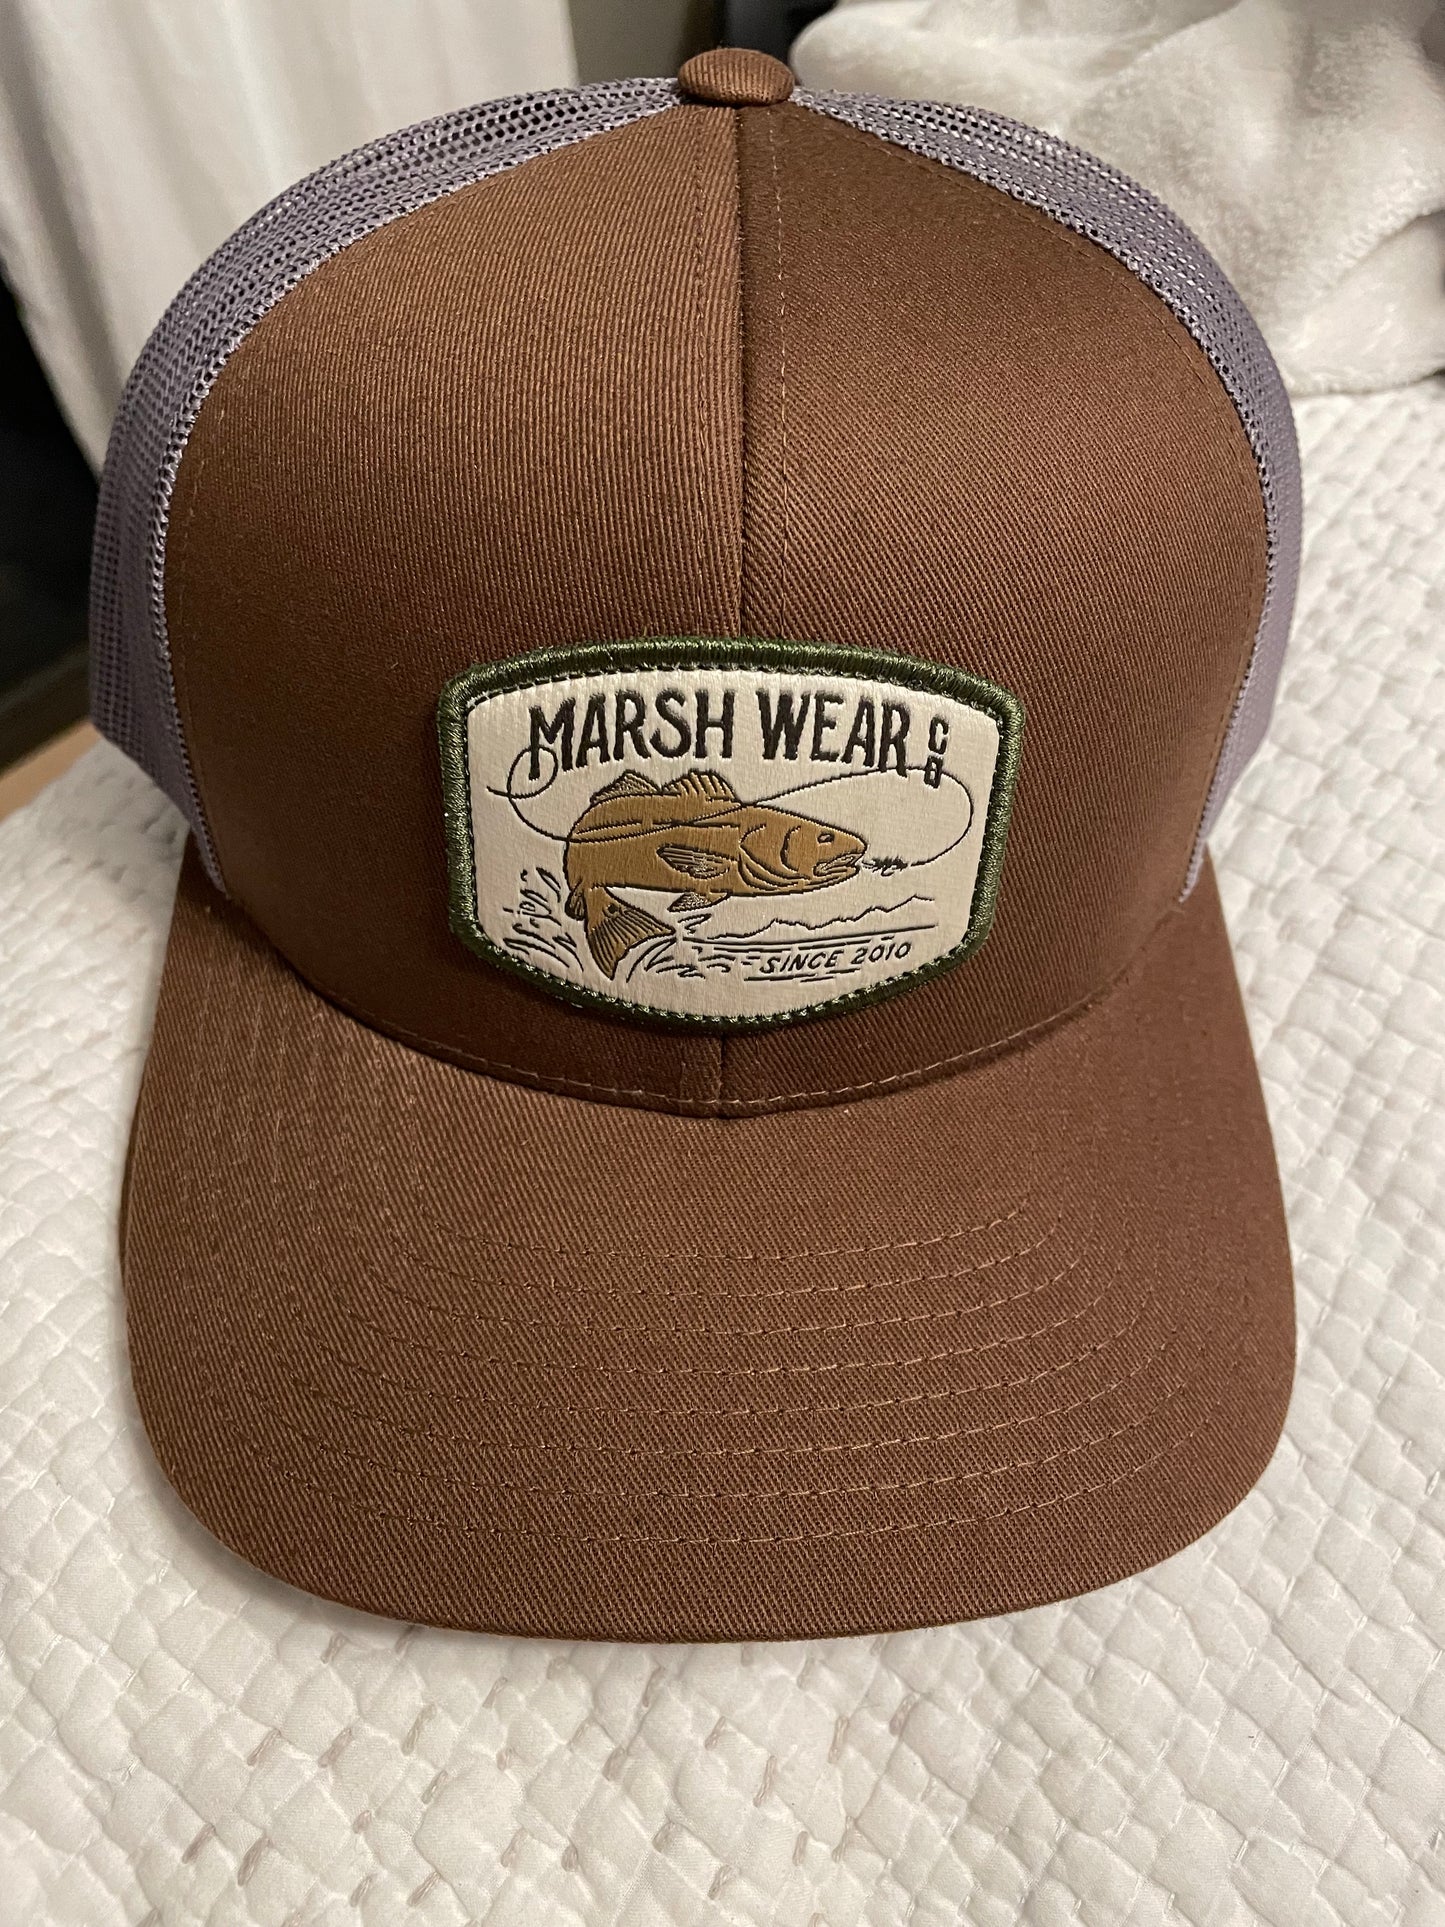 Marsh Wear Wild Ride Trucker Hat - BHI